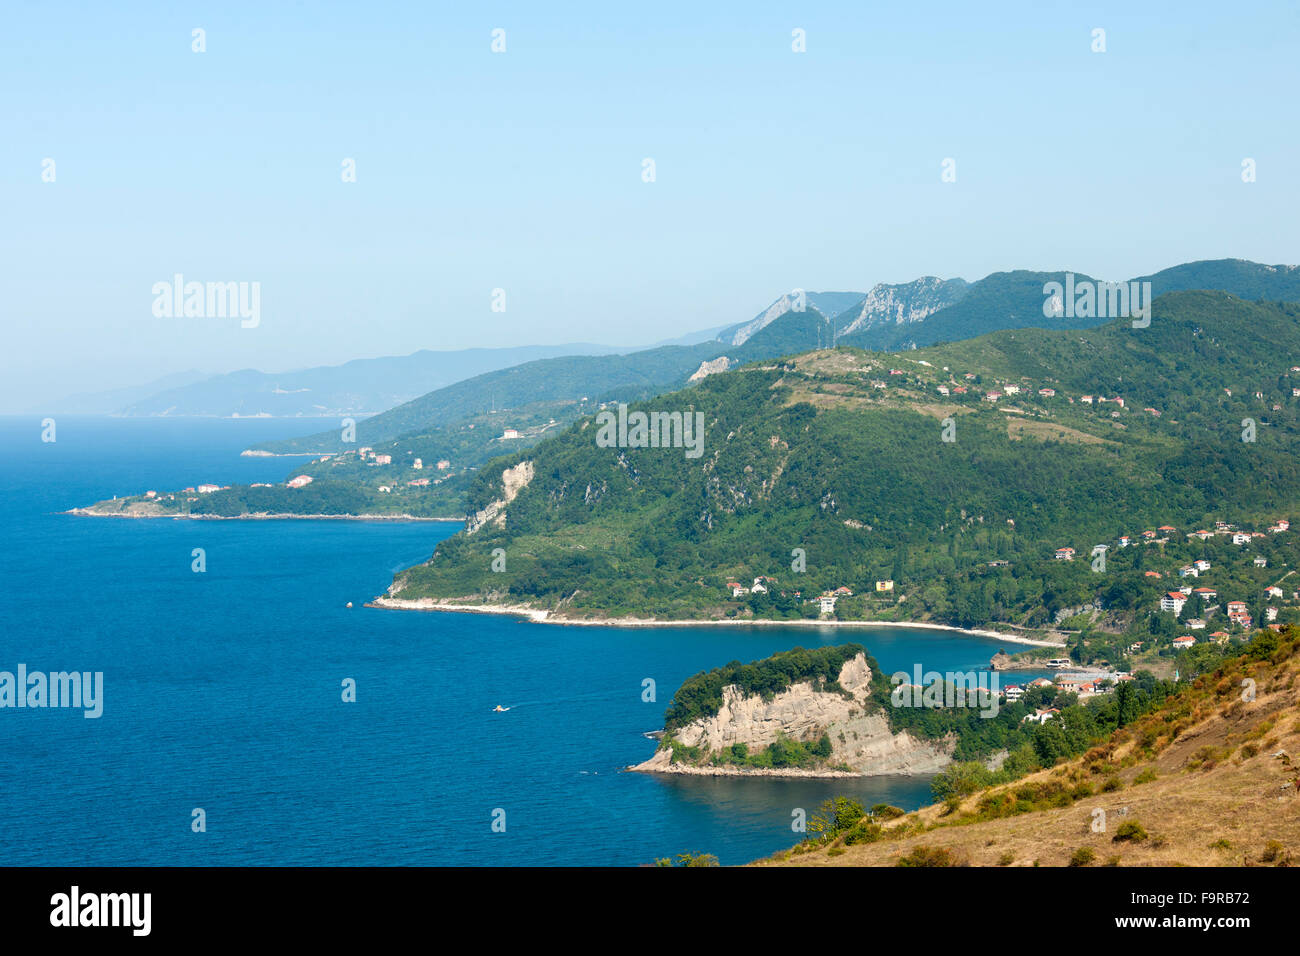 Türkei, westliche Schwarzmeerküste, östllich von Kurucasile Foto Stock